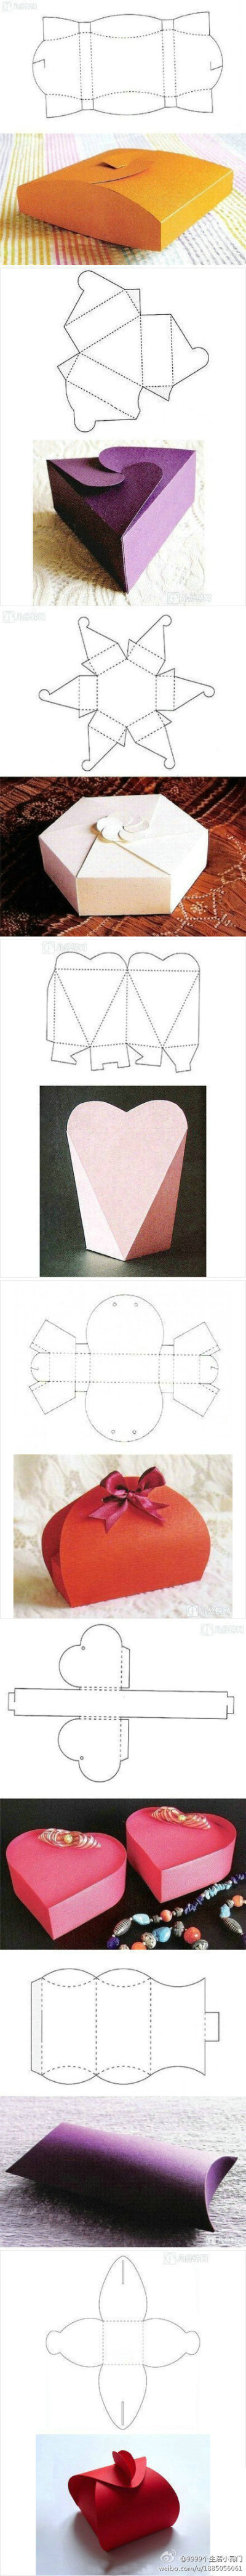 8款创意礼品盒的折法